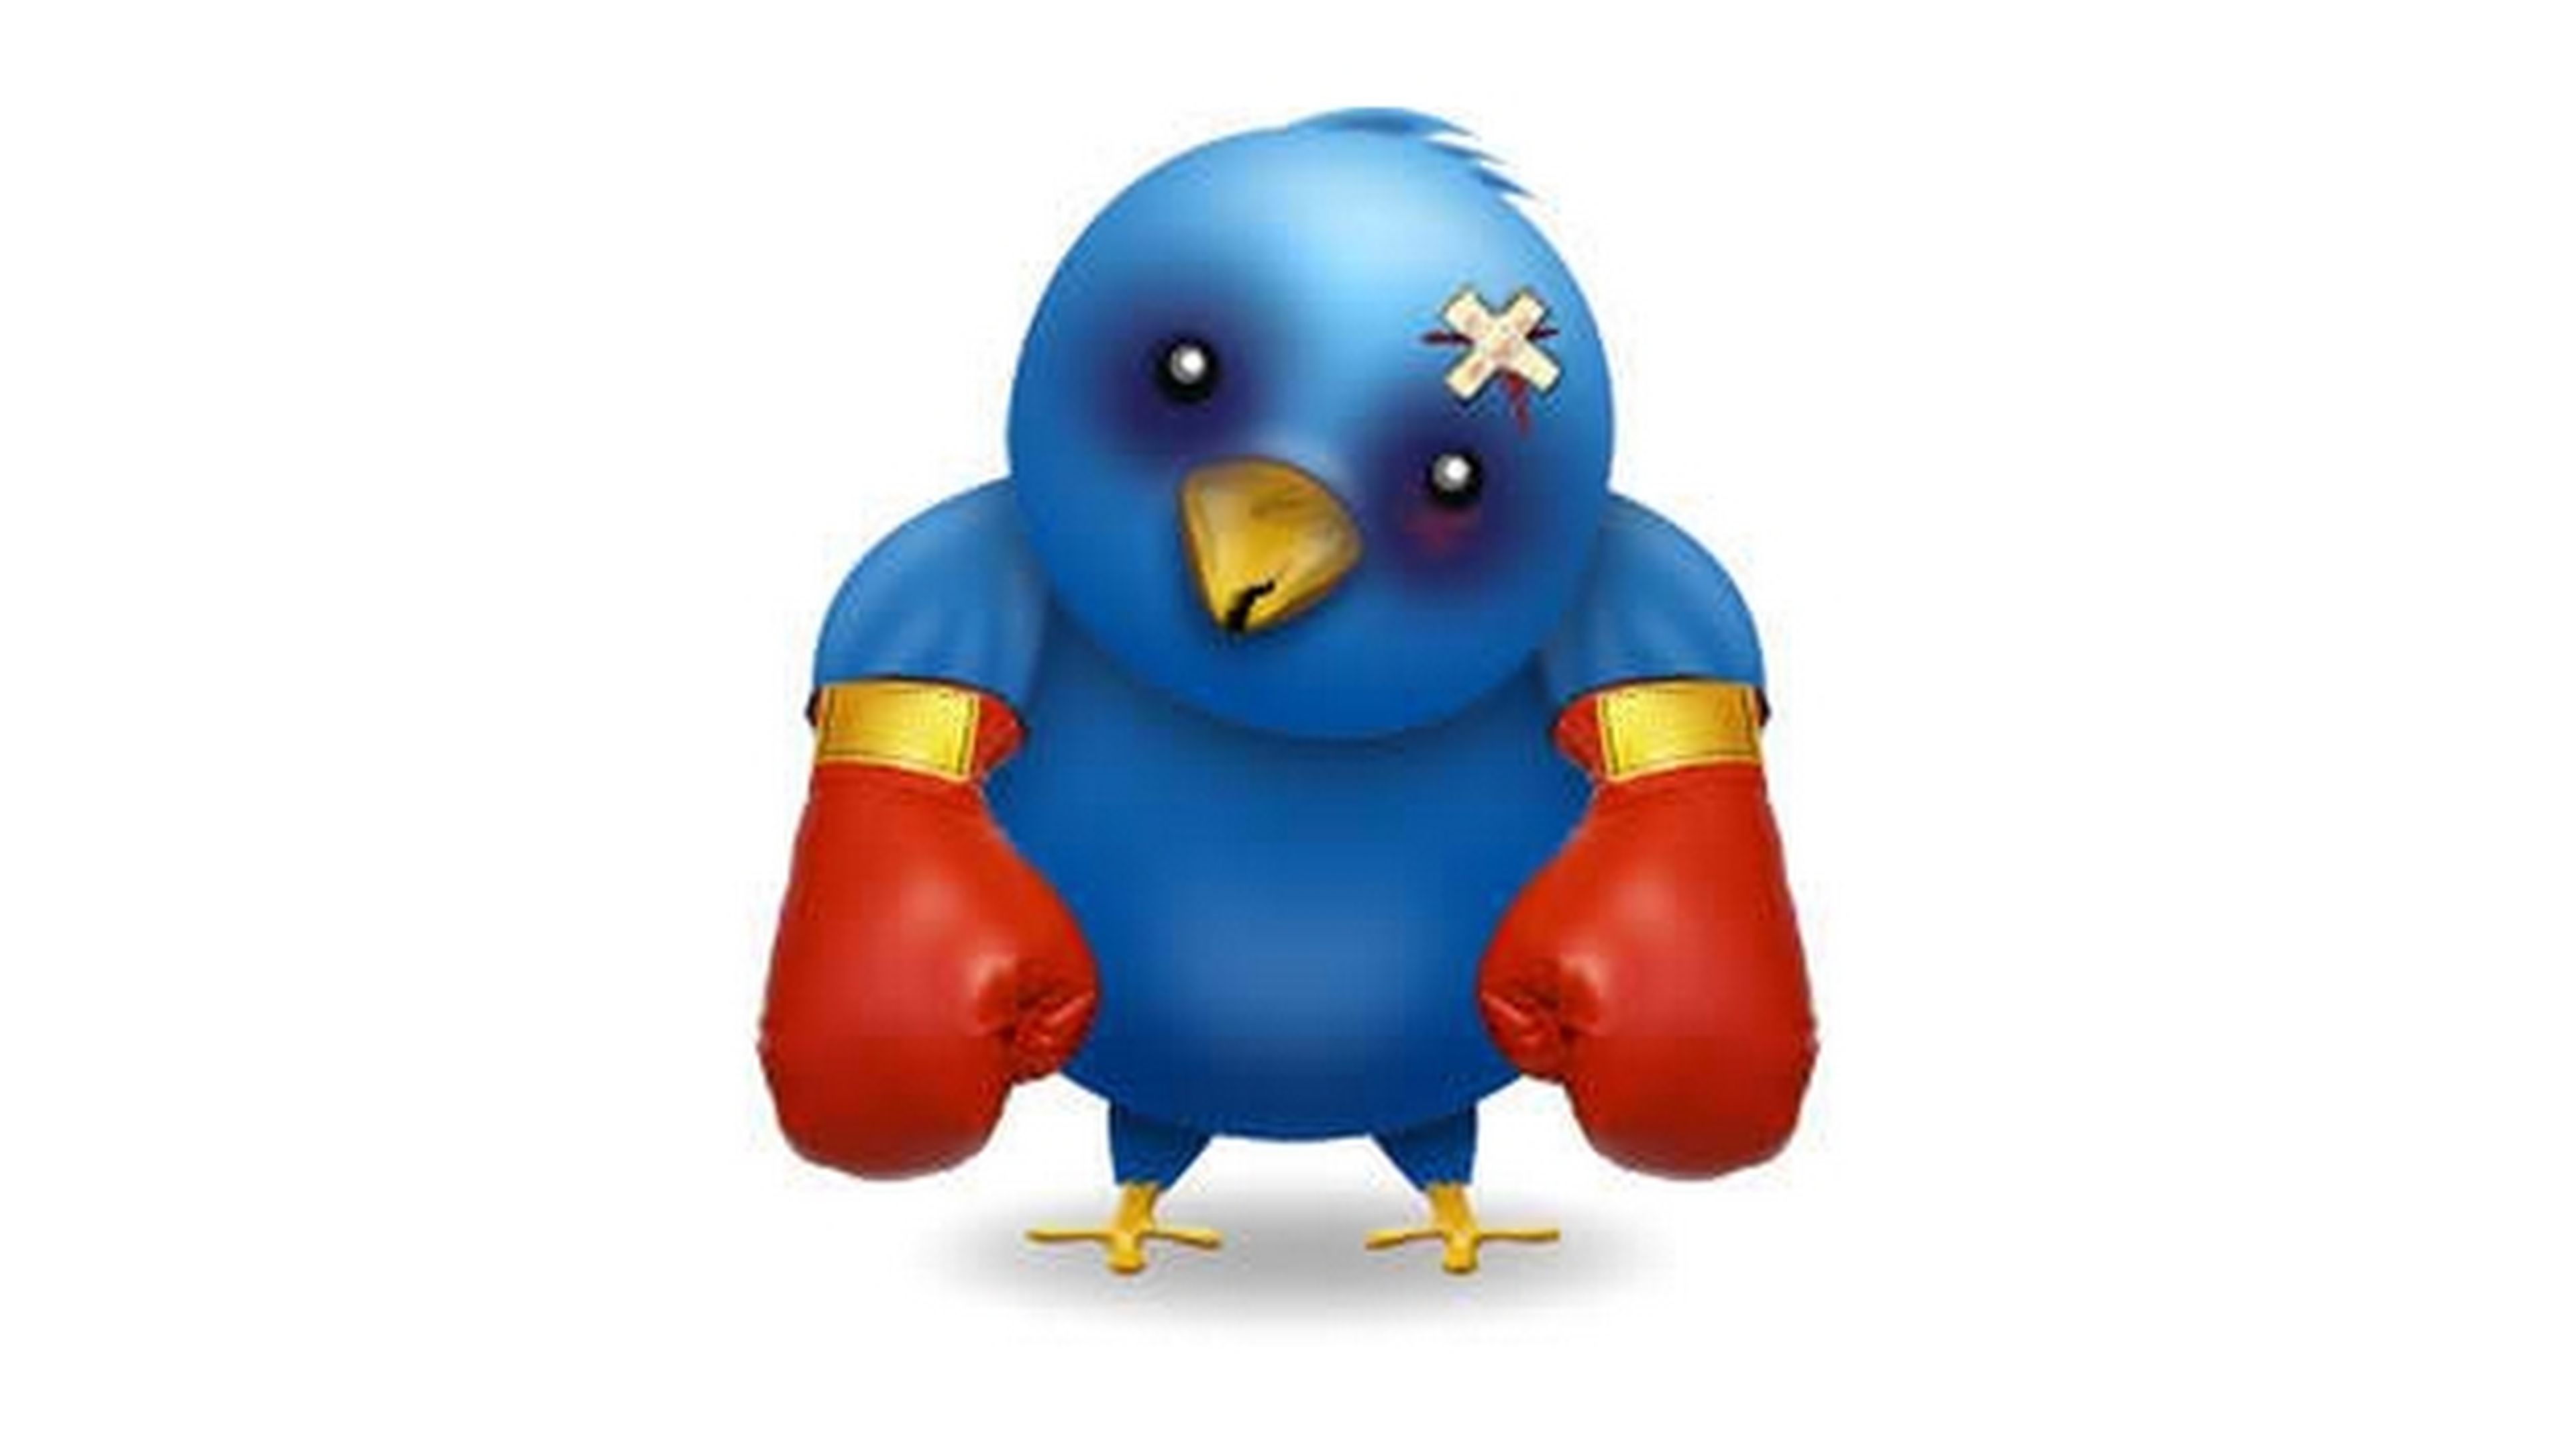 Condenan a penas de cárcel a dos tuiteros por realizar amenazas a través de Twitter